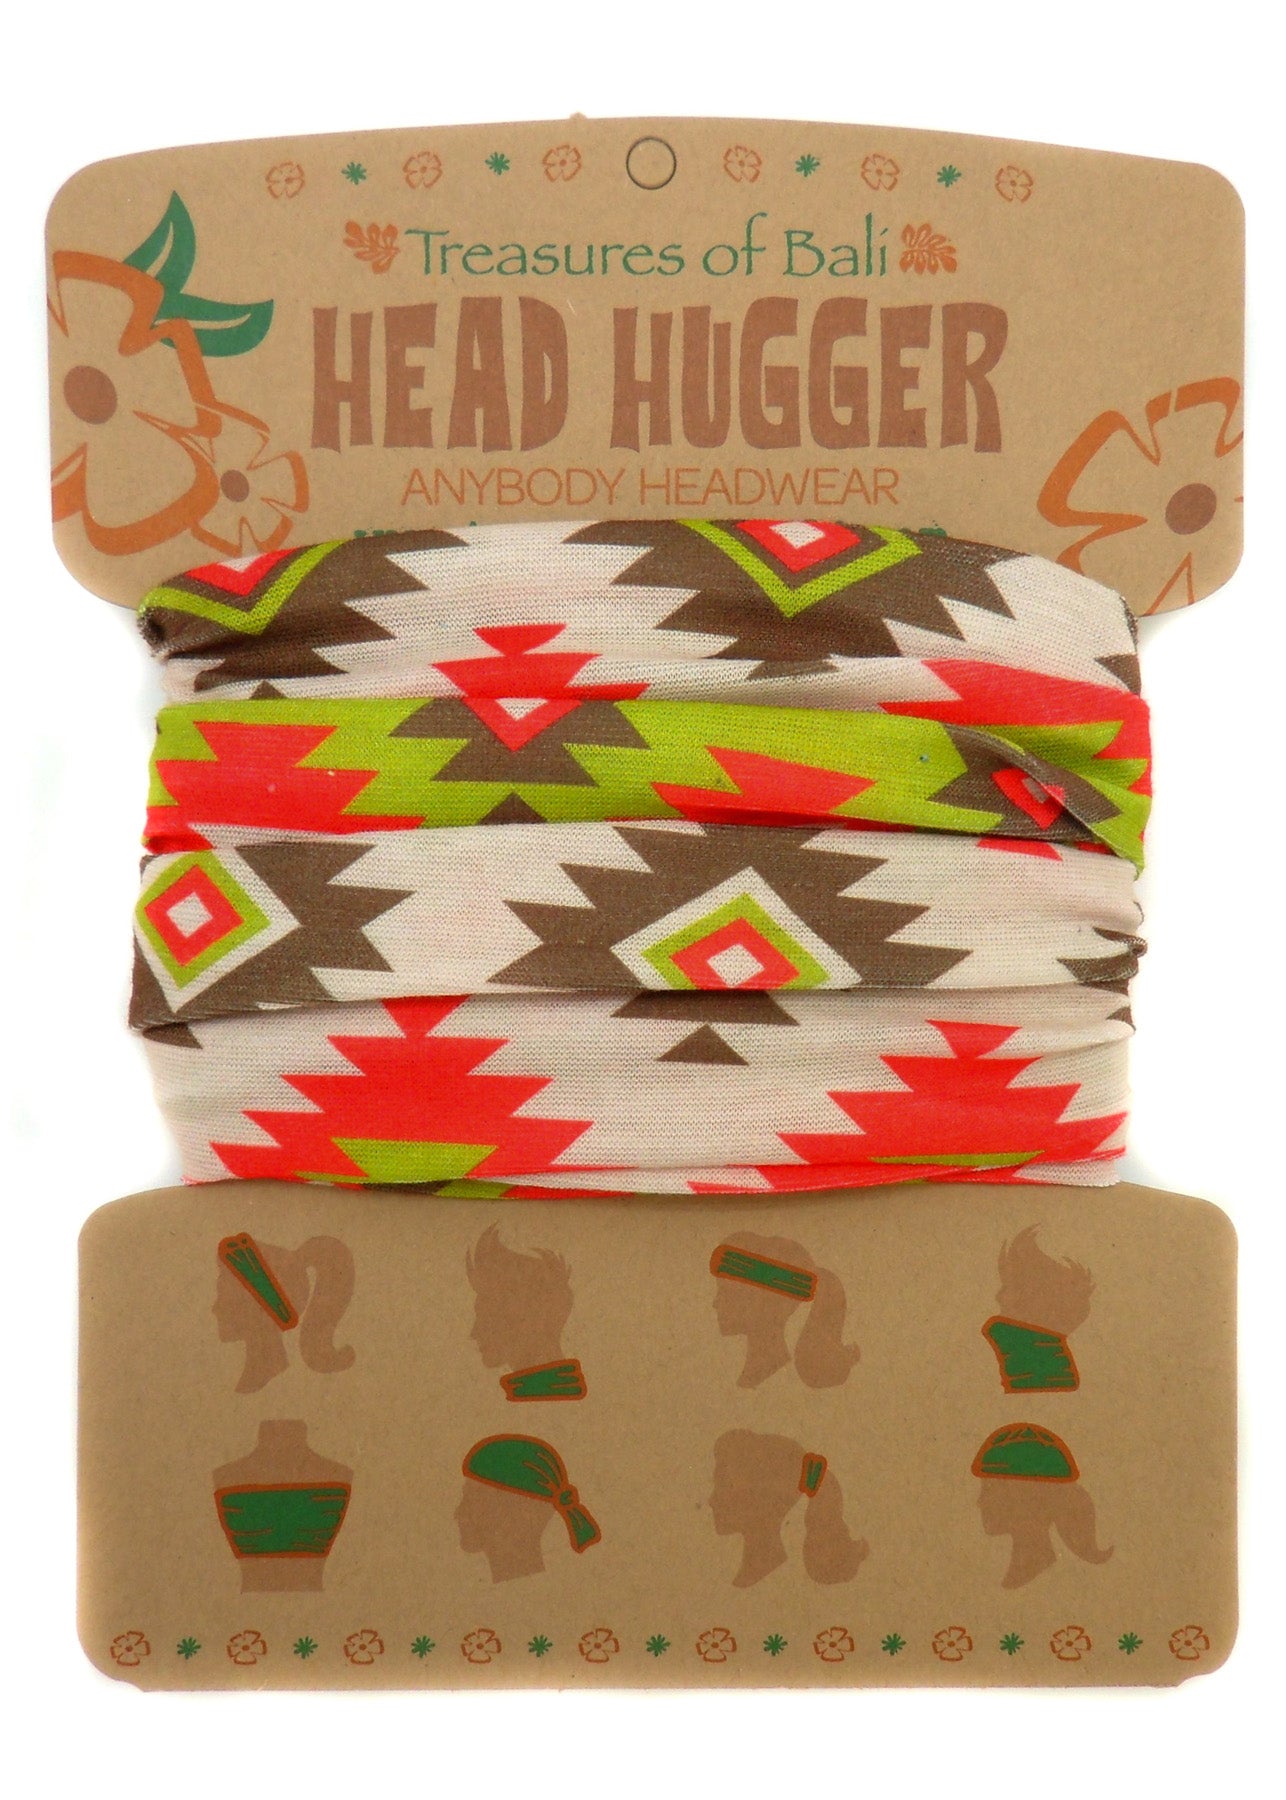 Head Hugger | Aztec Print